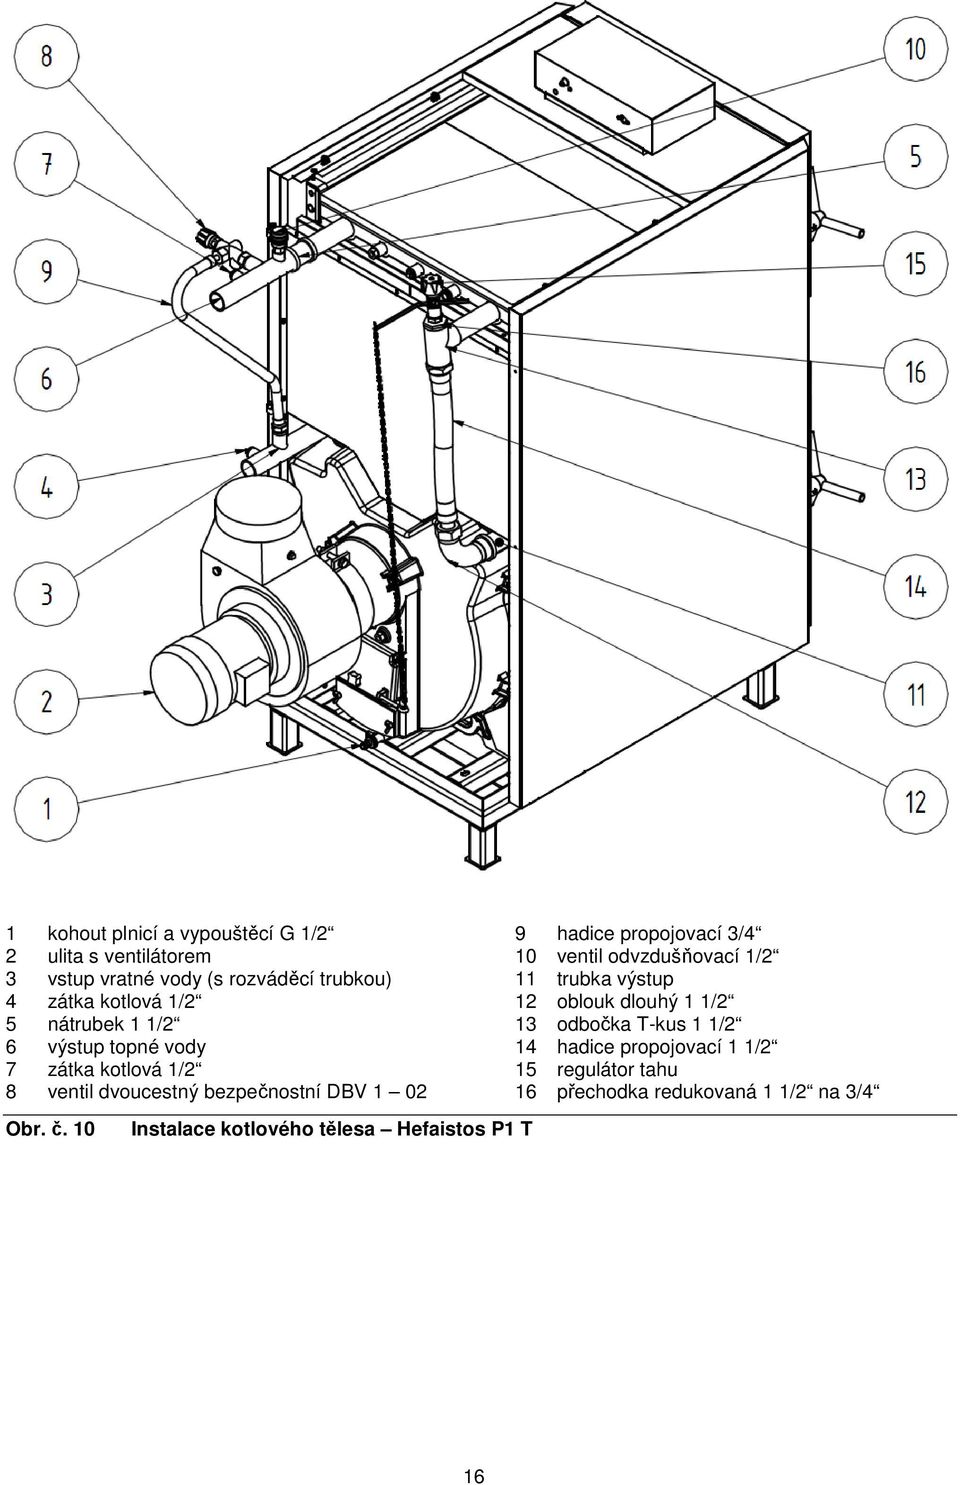 10 Instalace kotlového tělesa Hefaistos P1 T 9 hadice propojovací 3/4 10 ventil odvzdušňovací 1/2 11 trubka výstup 12